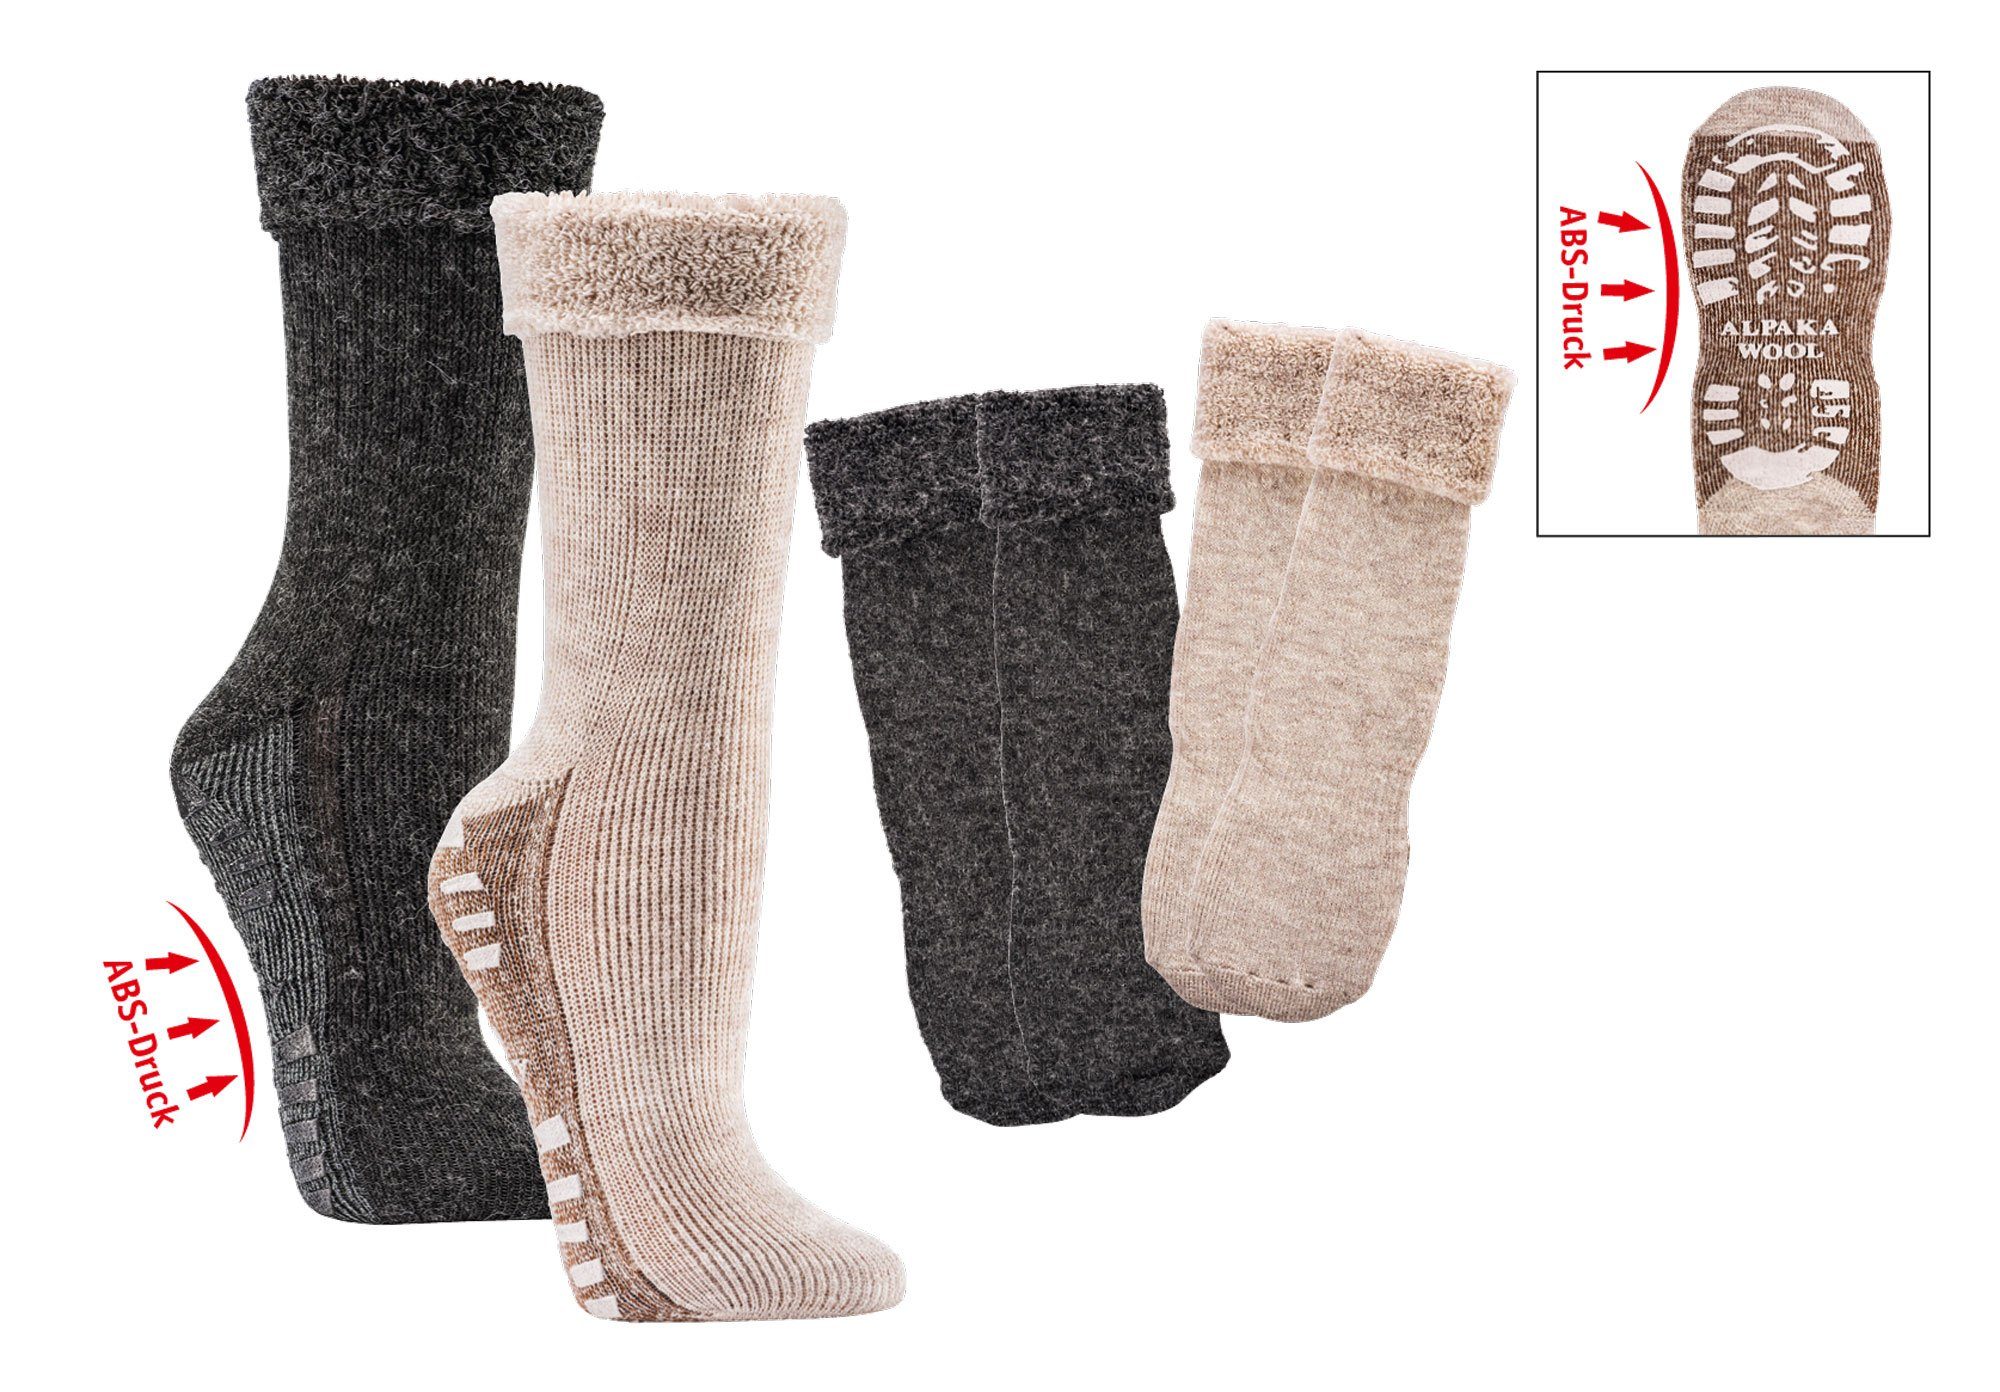 Wowerat ABS-Socken mit Alpaka Wolle extra flauschig gefüttert Homesocks Bettsocken (2 Paar) mit ABS Druck auf der Sohle anthrazit